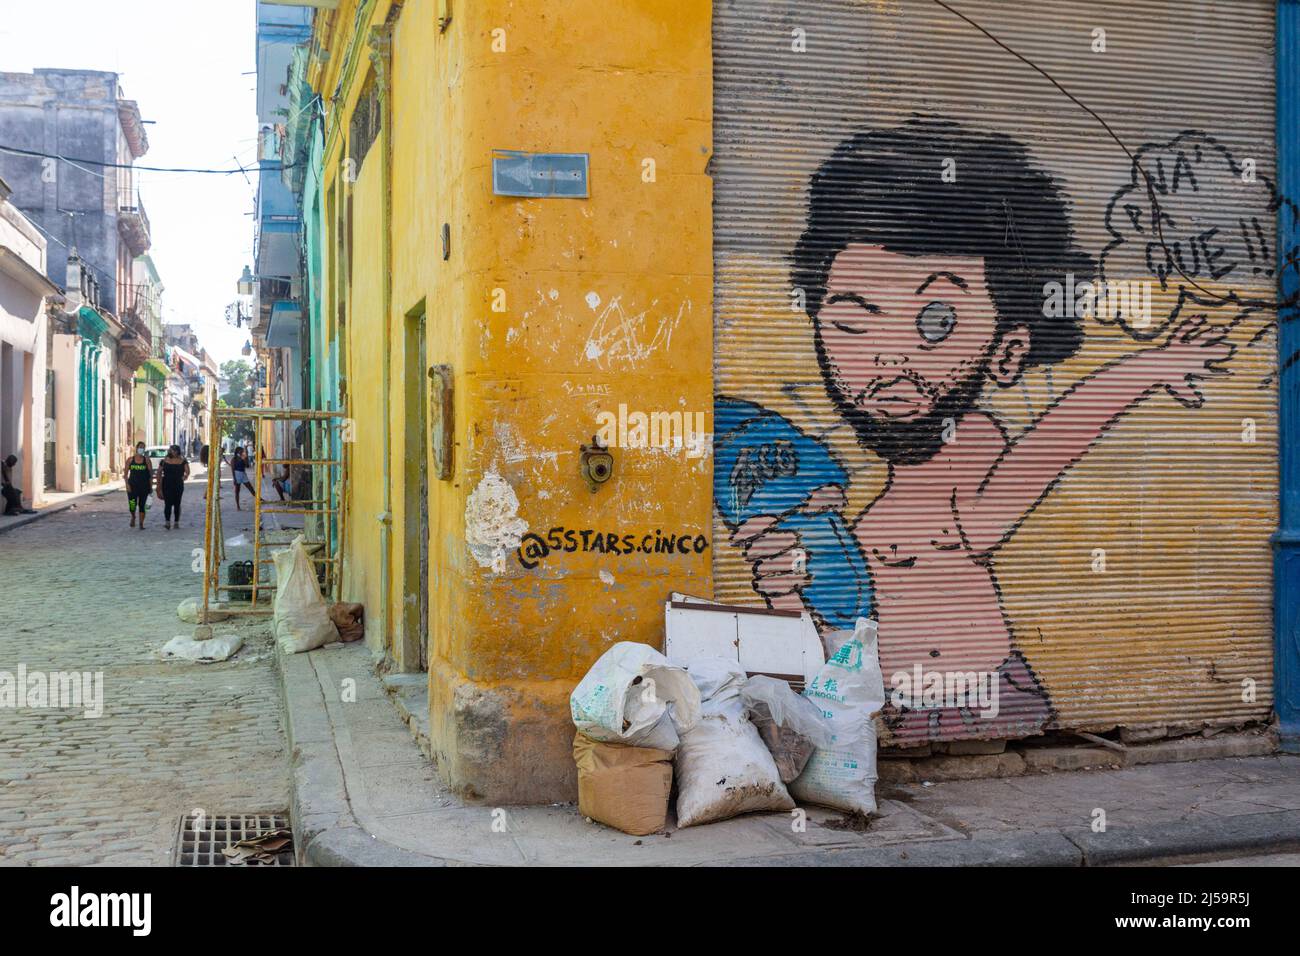 Müllsäcke in einer Ecke der Altstadt von Havanna. Ein urbanes Graffiti-Gemälde ist in einer alten metallischen vertikal Schiebetür eines Unternehmens zu sehen. Stockfoto